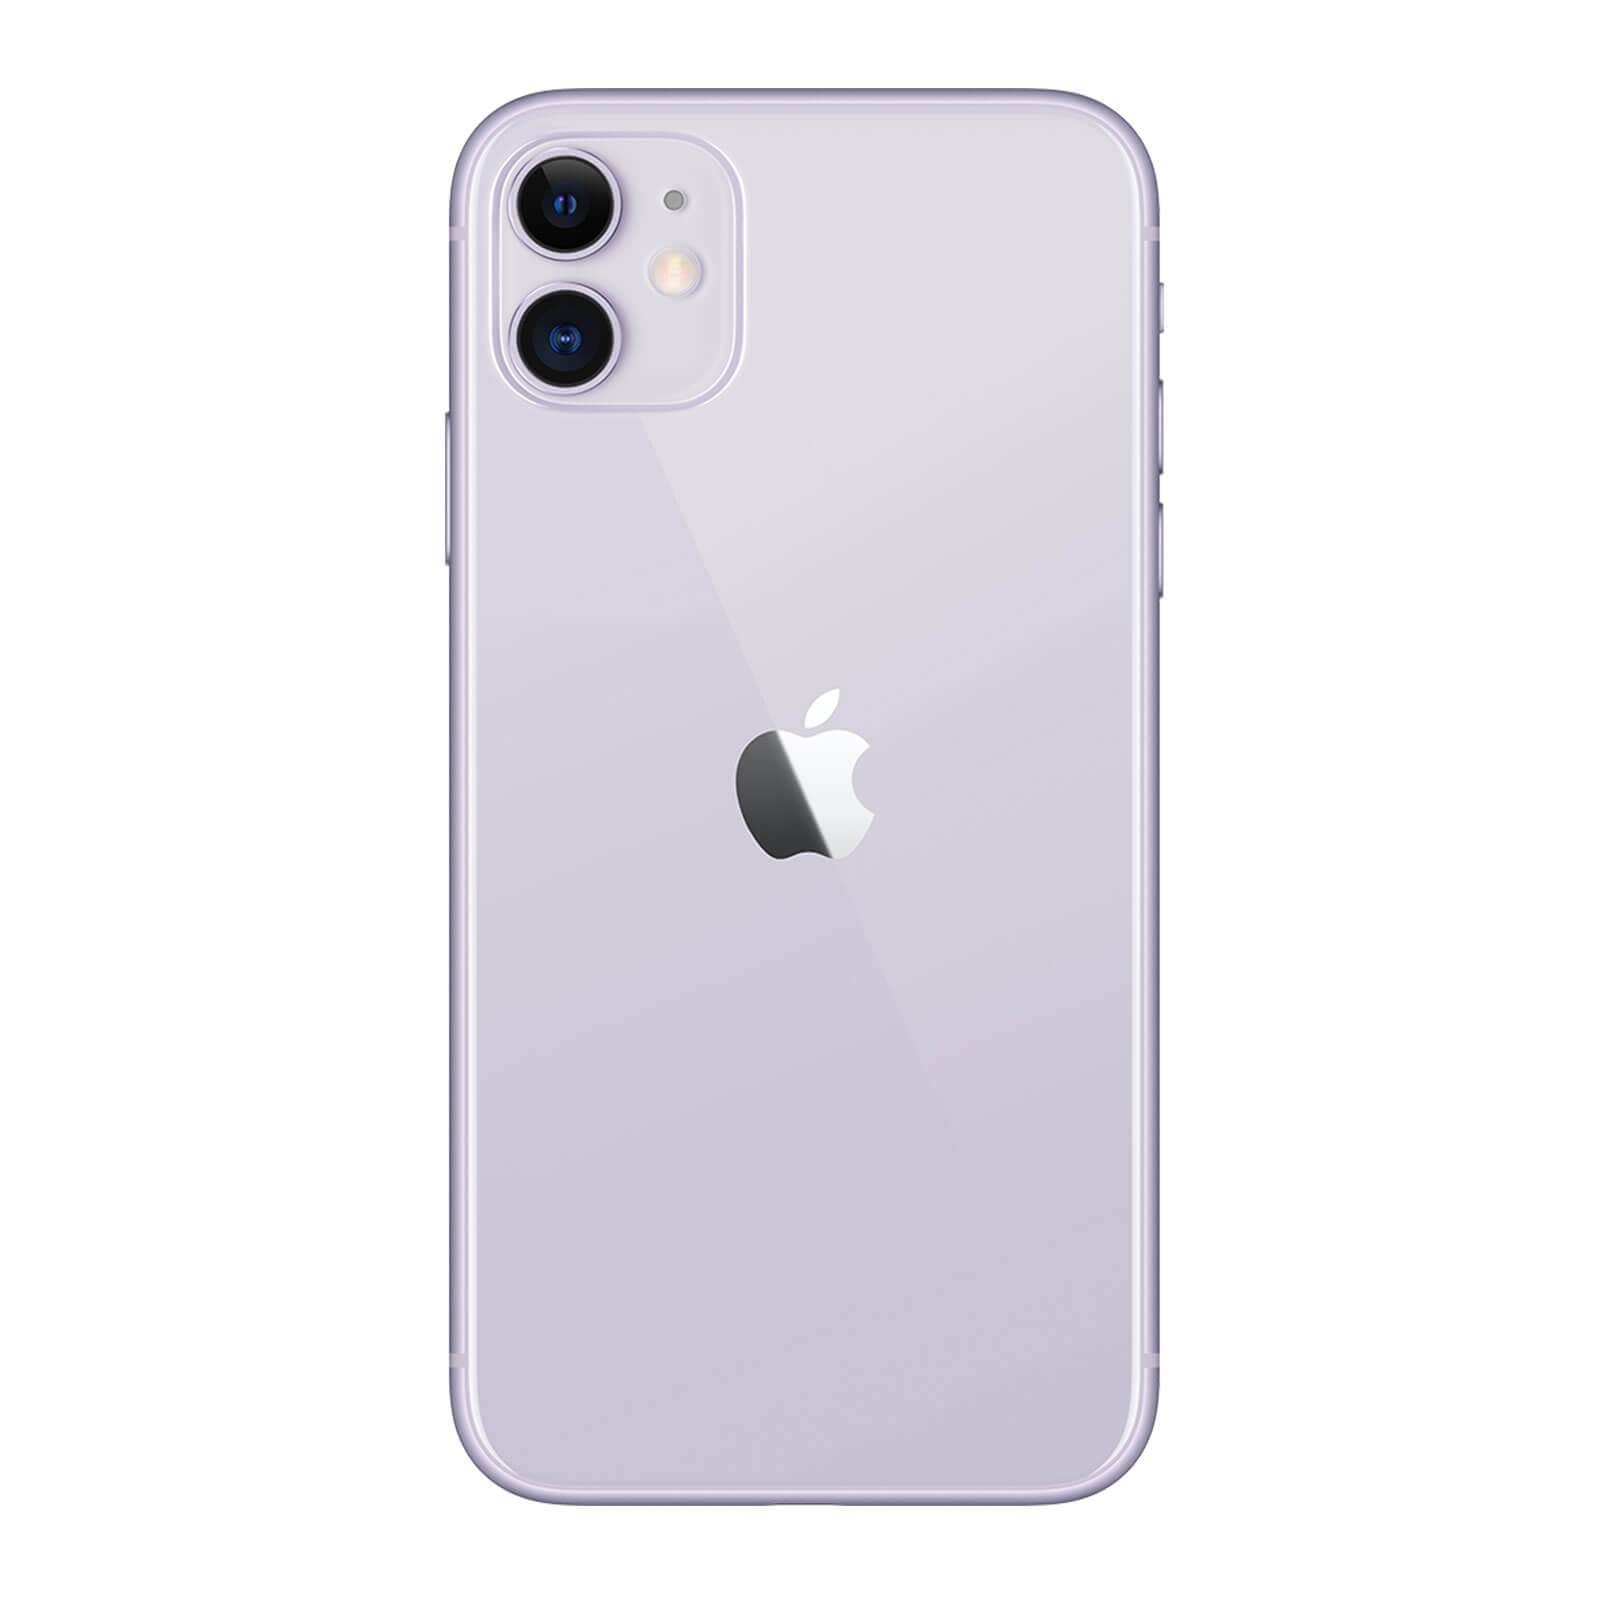 Apple iPhone 11 64GB Purple Fair - Unlocked